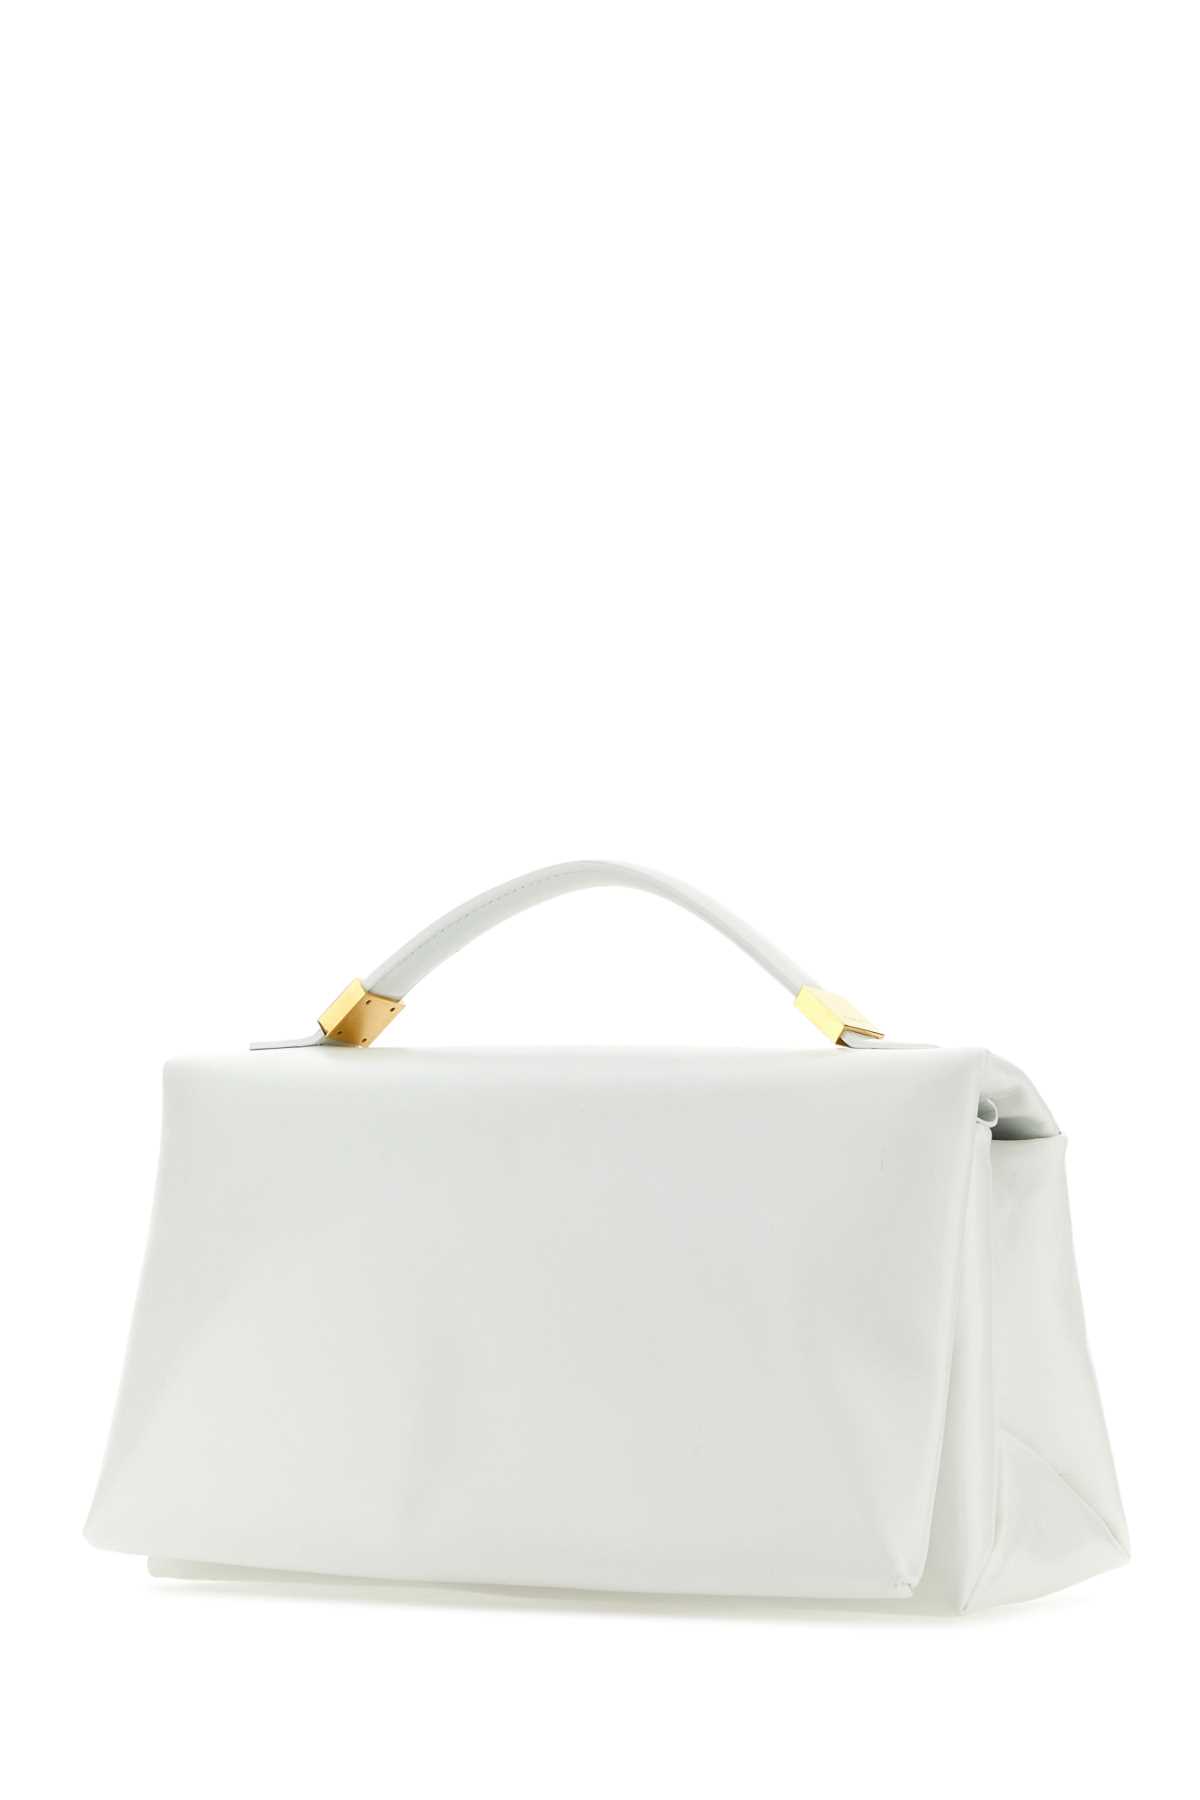 Marni White Leather Prisma Handbag In 00w01